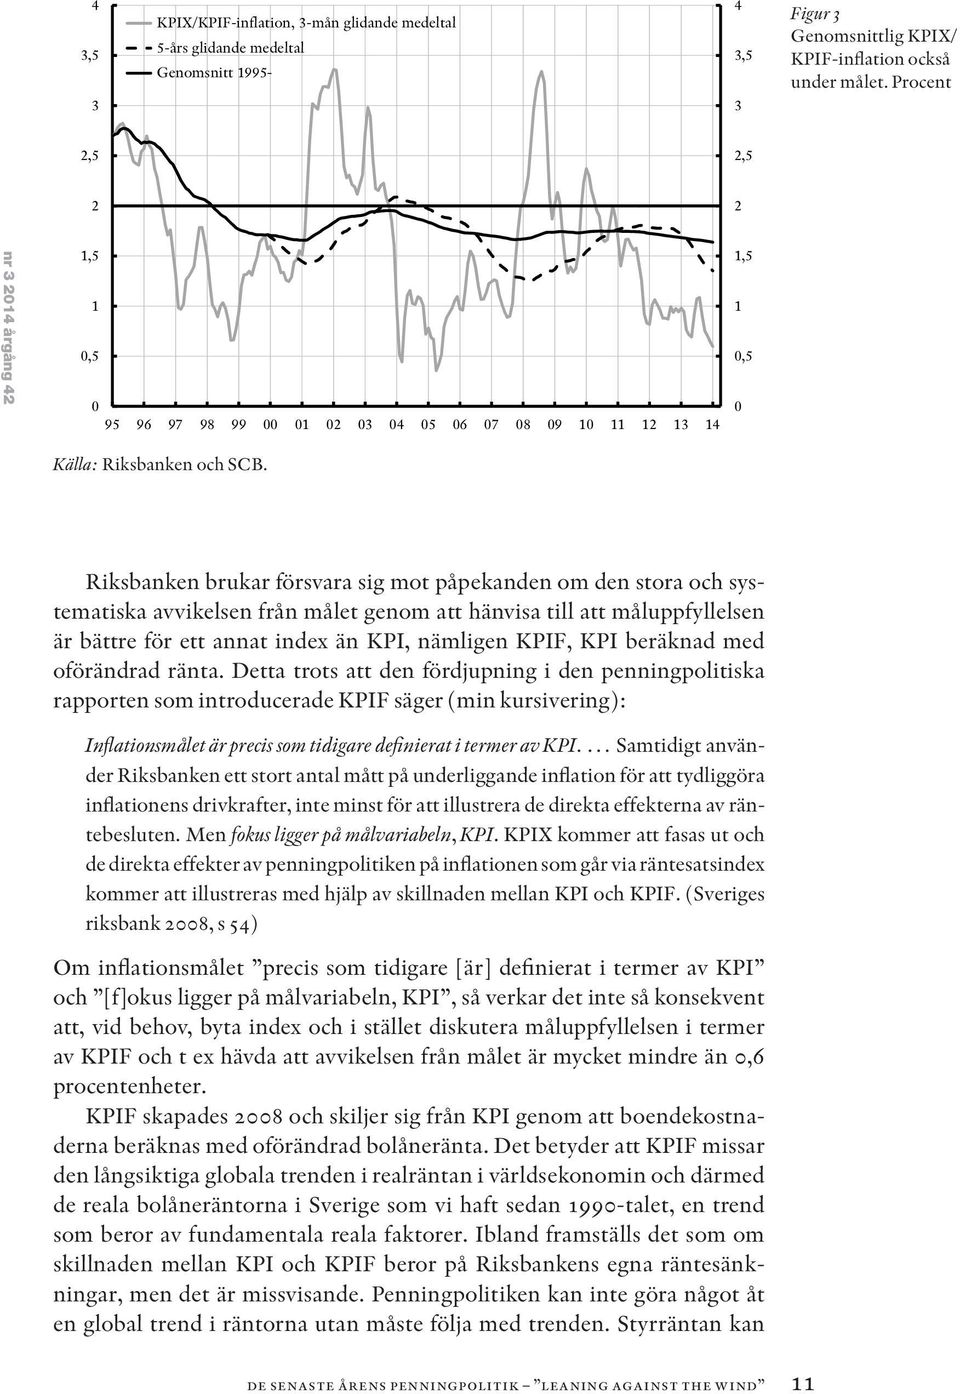 Riksbanken brukar försvara sig mot påpekanden om den stora och systematiska avvikelsen från målet genom att hänvisa till att måluppfyllelsen är bättre för ett annat index än KPI, nämligen KPIF, KPI